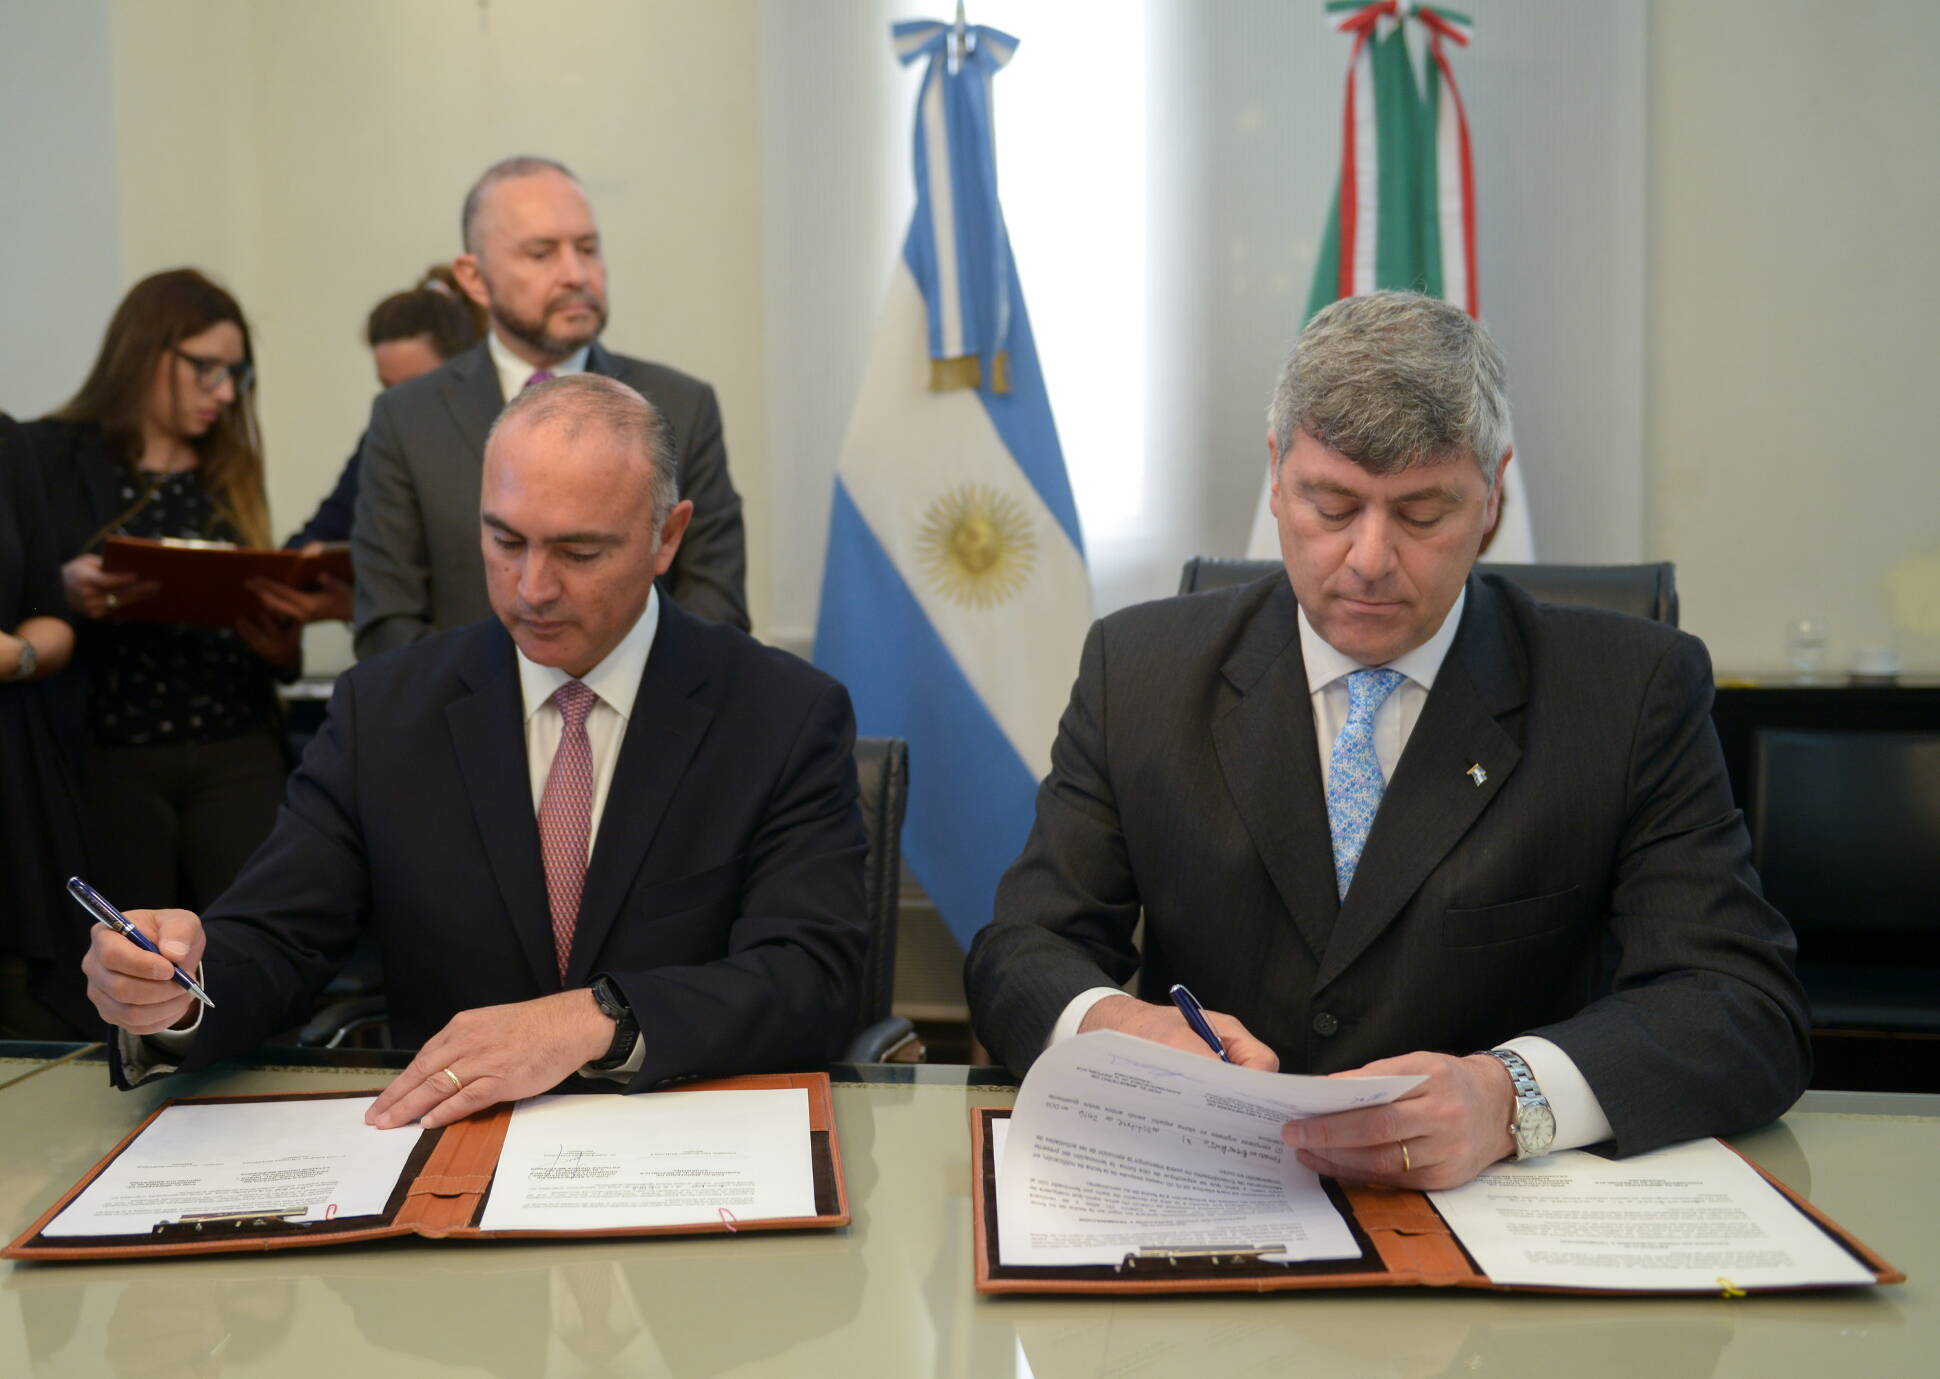  Una comitiva de México ratificó su interés en adquirir tecnología argentina para su agroindustria